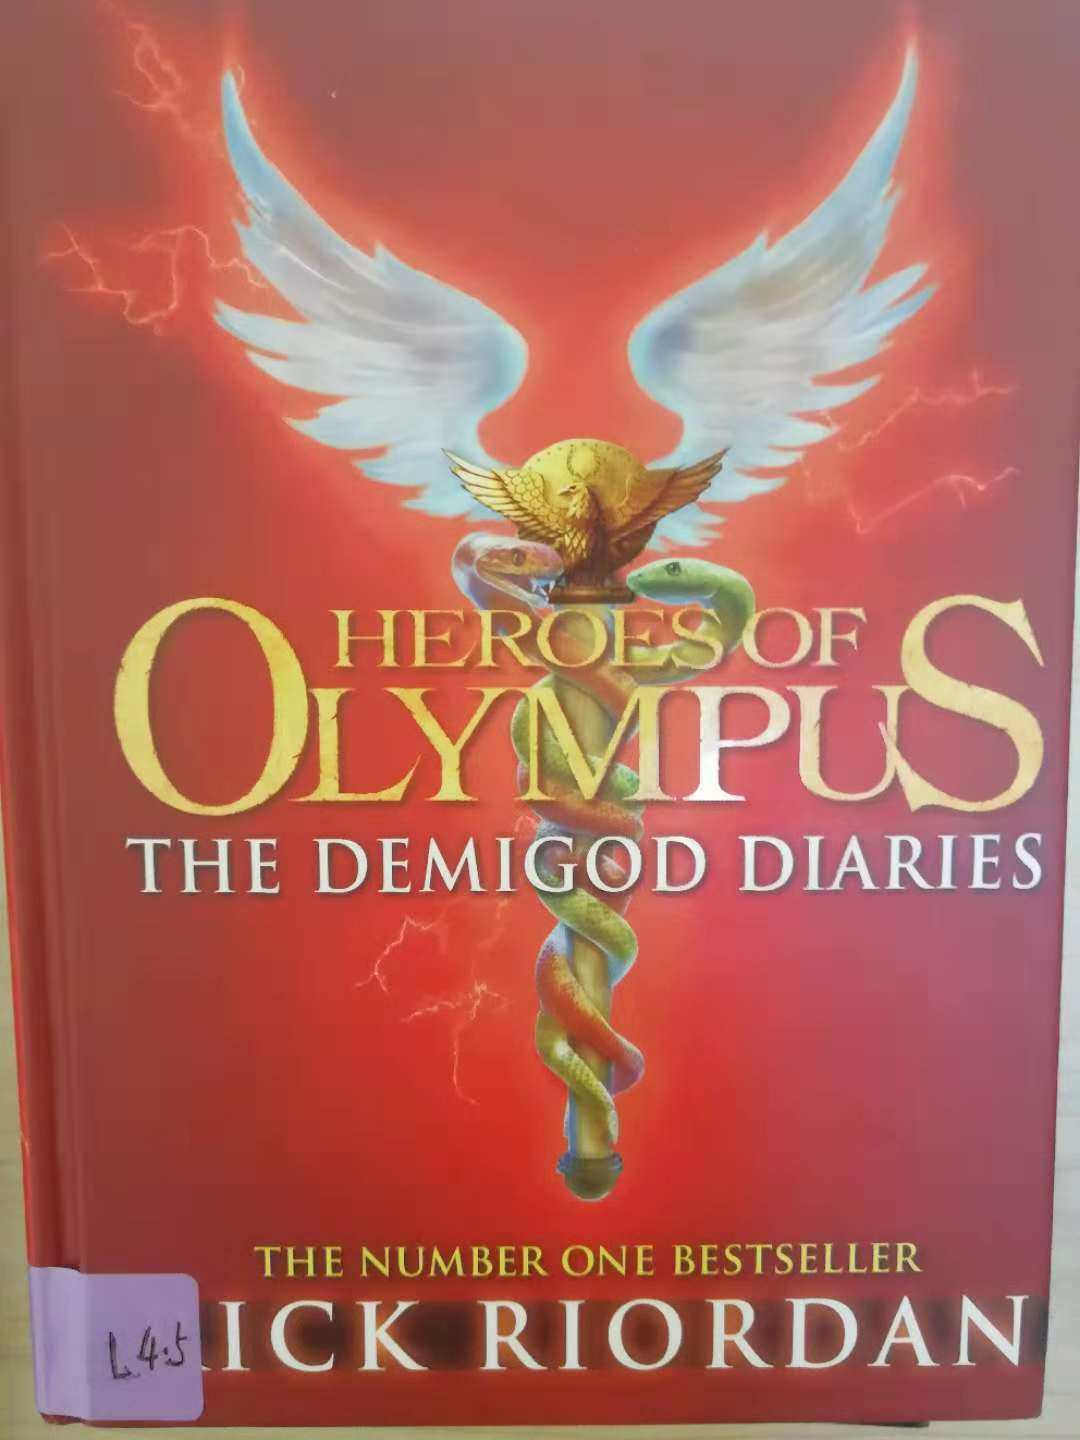 Heroes of Olympus the demigod diaries  4.5